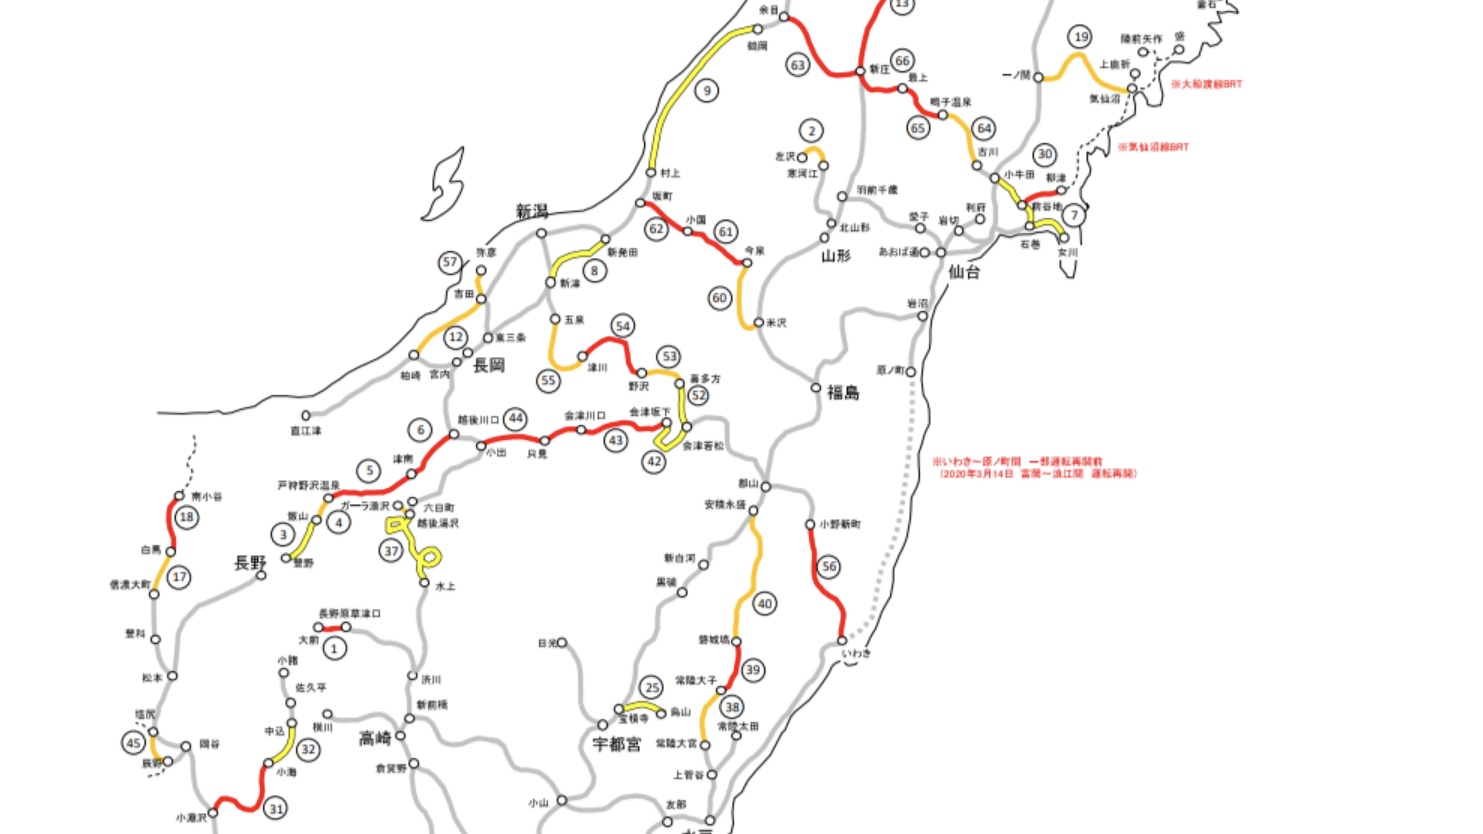 【ヤバすぎ】JR東日本、赤字路線の収支公開 100円稼ぐのに2万円かかる路線とは!? 東京近郊でも地域交通として維持できない